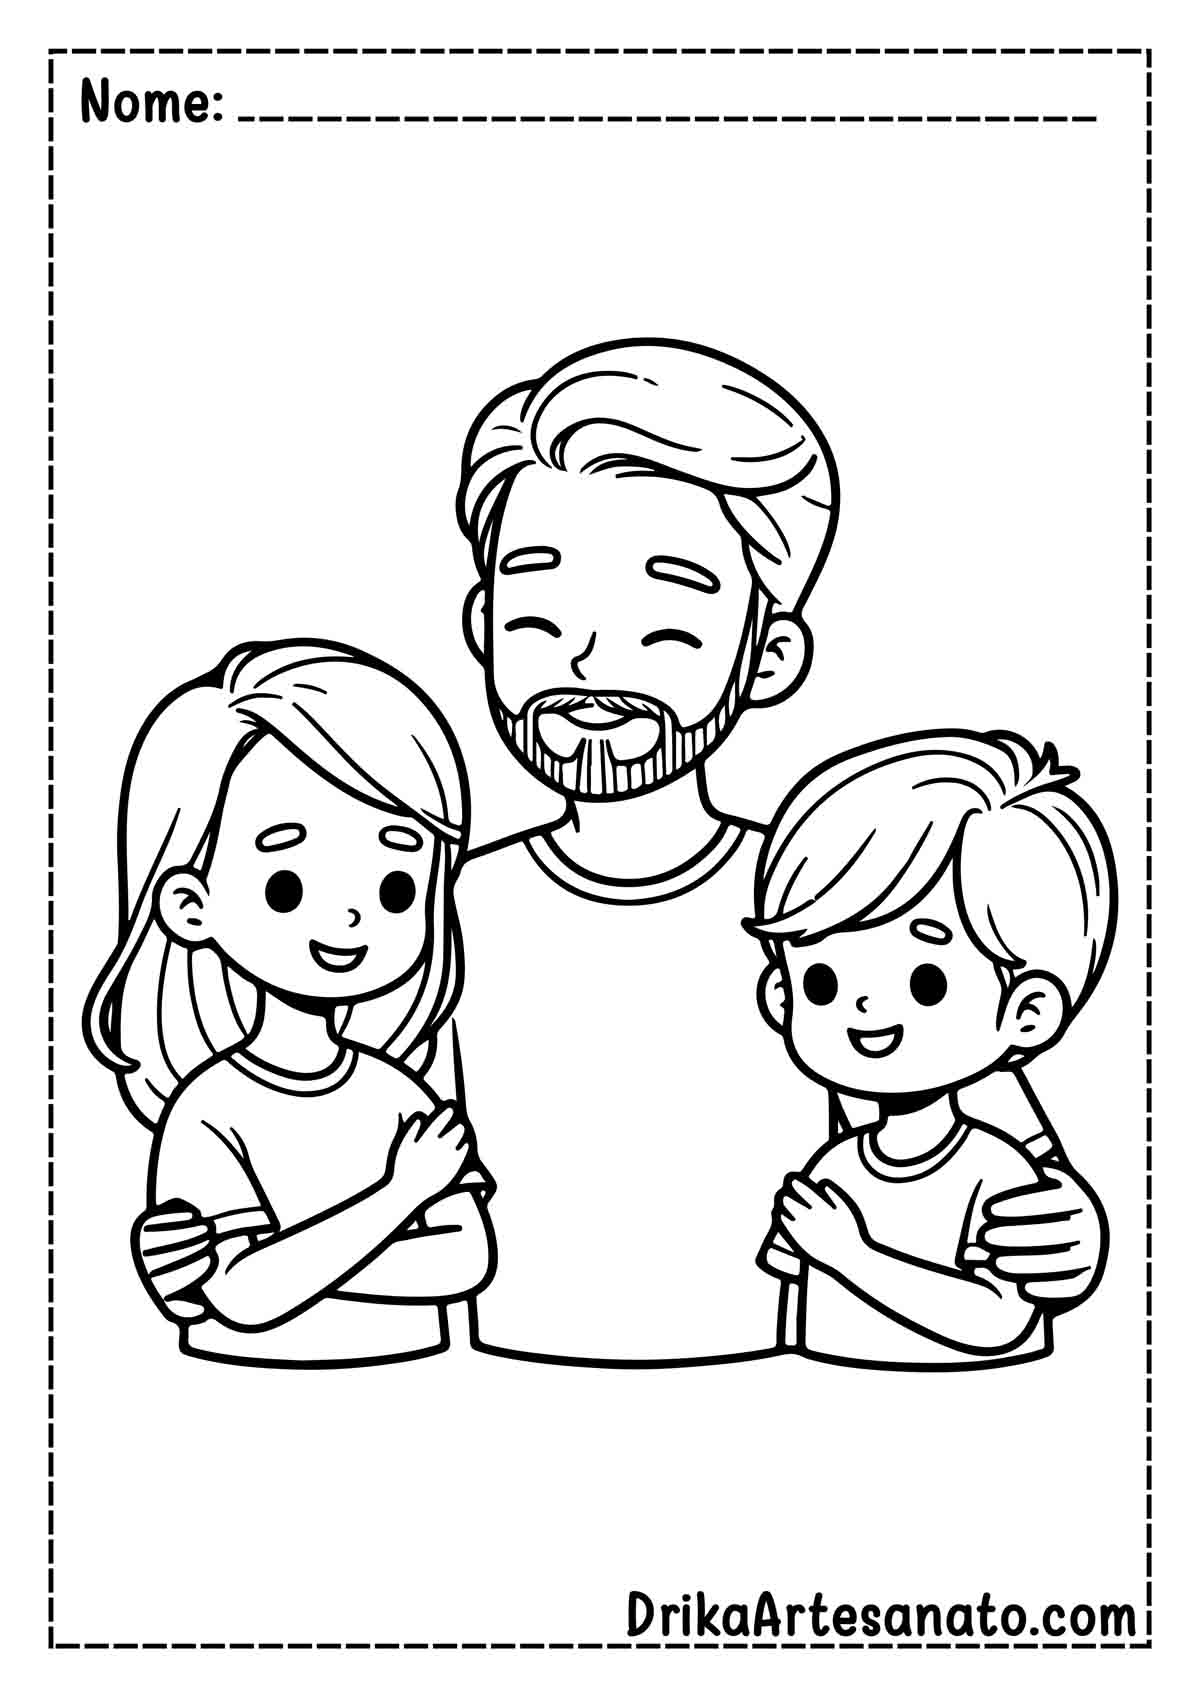 Desenho de Dia dos Pais Simples para Imprimir e Colorir